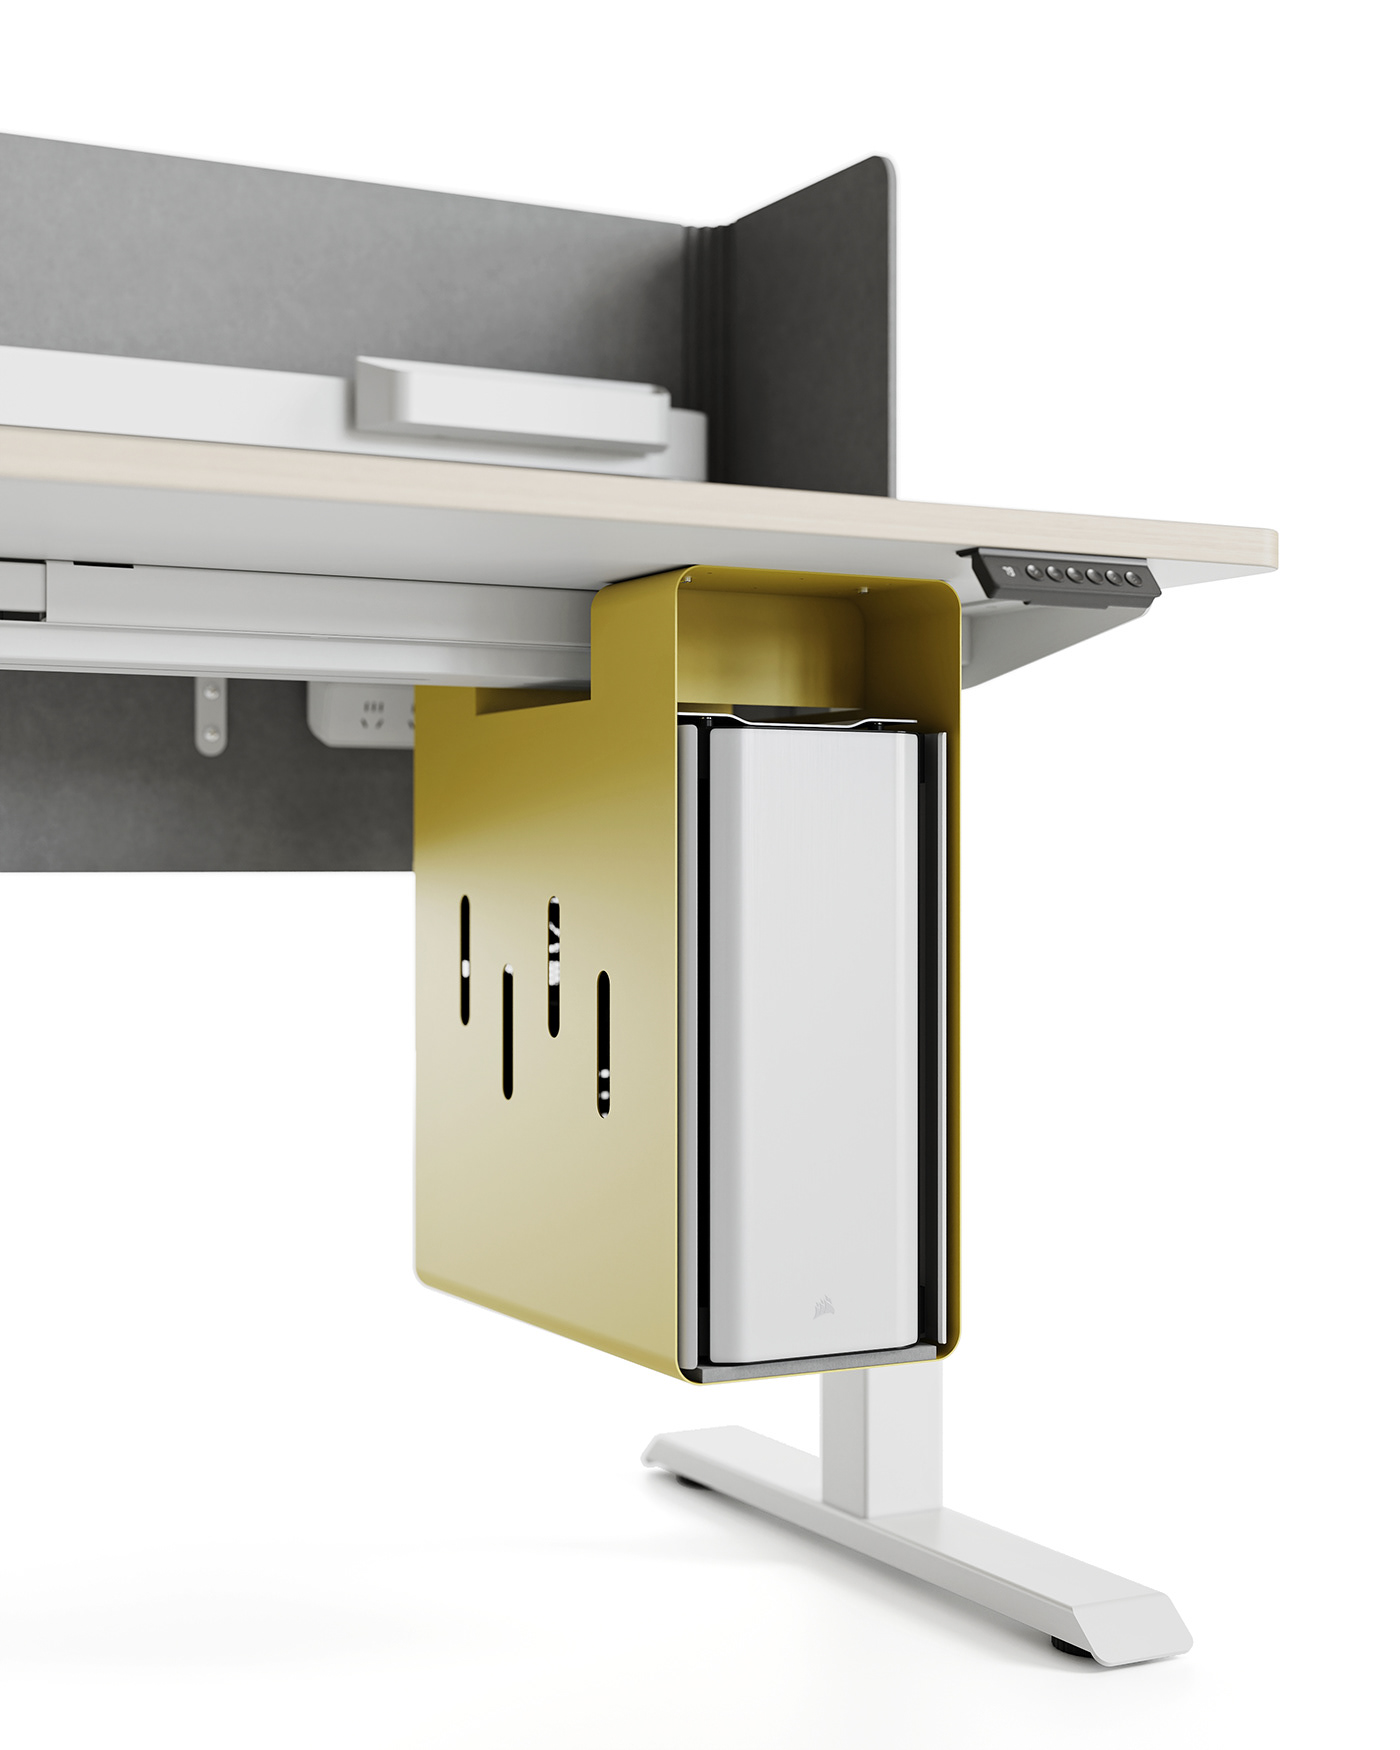 furniture product design  office furniture visualization 3D